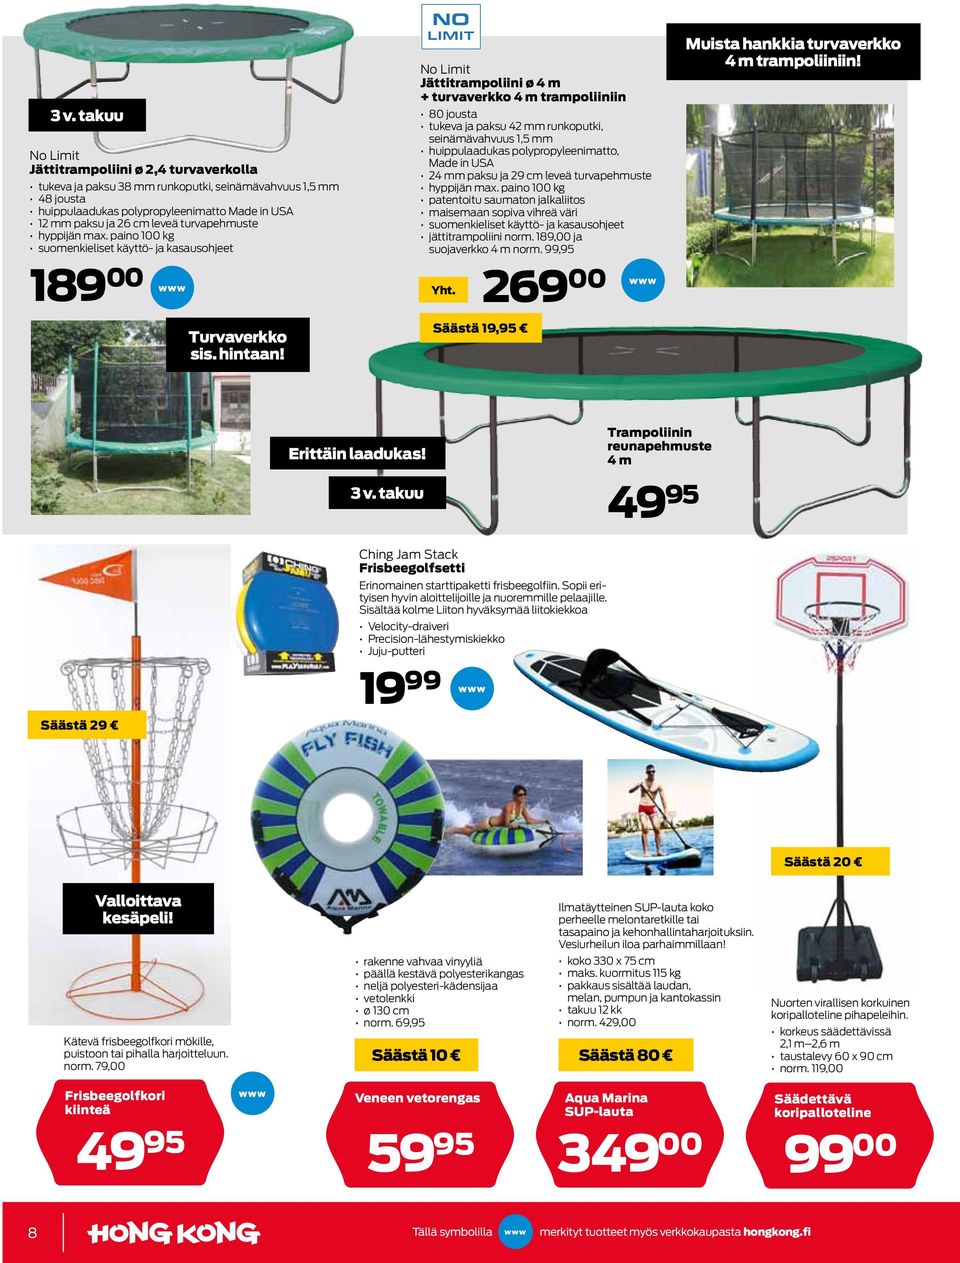 No Limit Jättitrampoliini ø 4 m + turvaverkko 4 m trampoliiniin 80 jousta tukeva ja paksu 42 mm runkoputki, seinämävahvuus 1,5 mm huippulaadukas polypropyleenimatto, Made in USA 24 mm paksu ja 29 cm